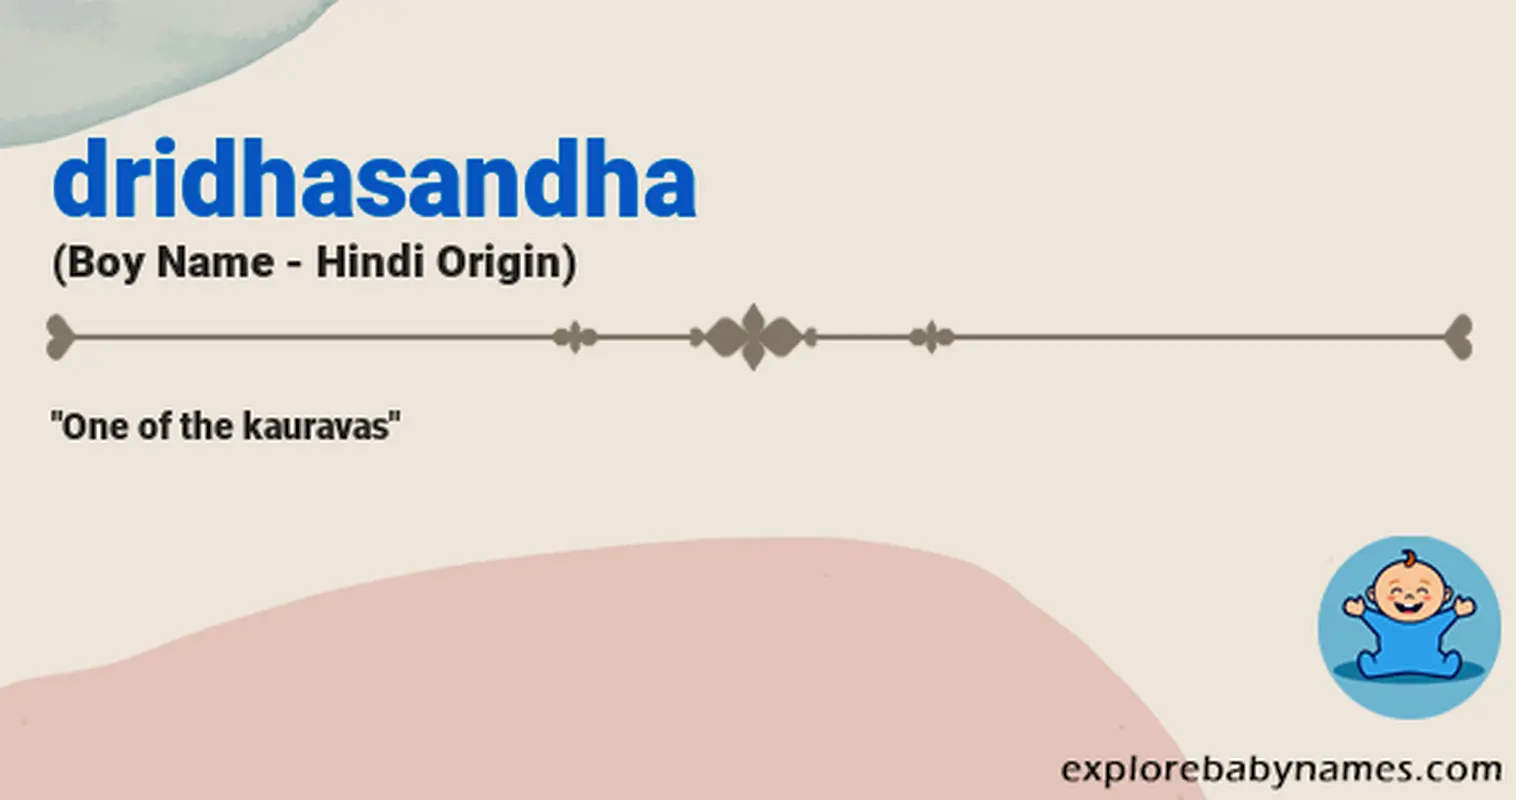 Meaning of Dridhasandha